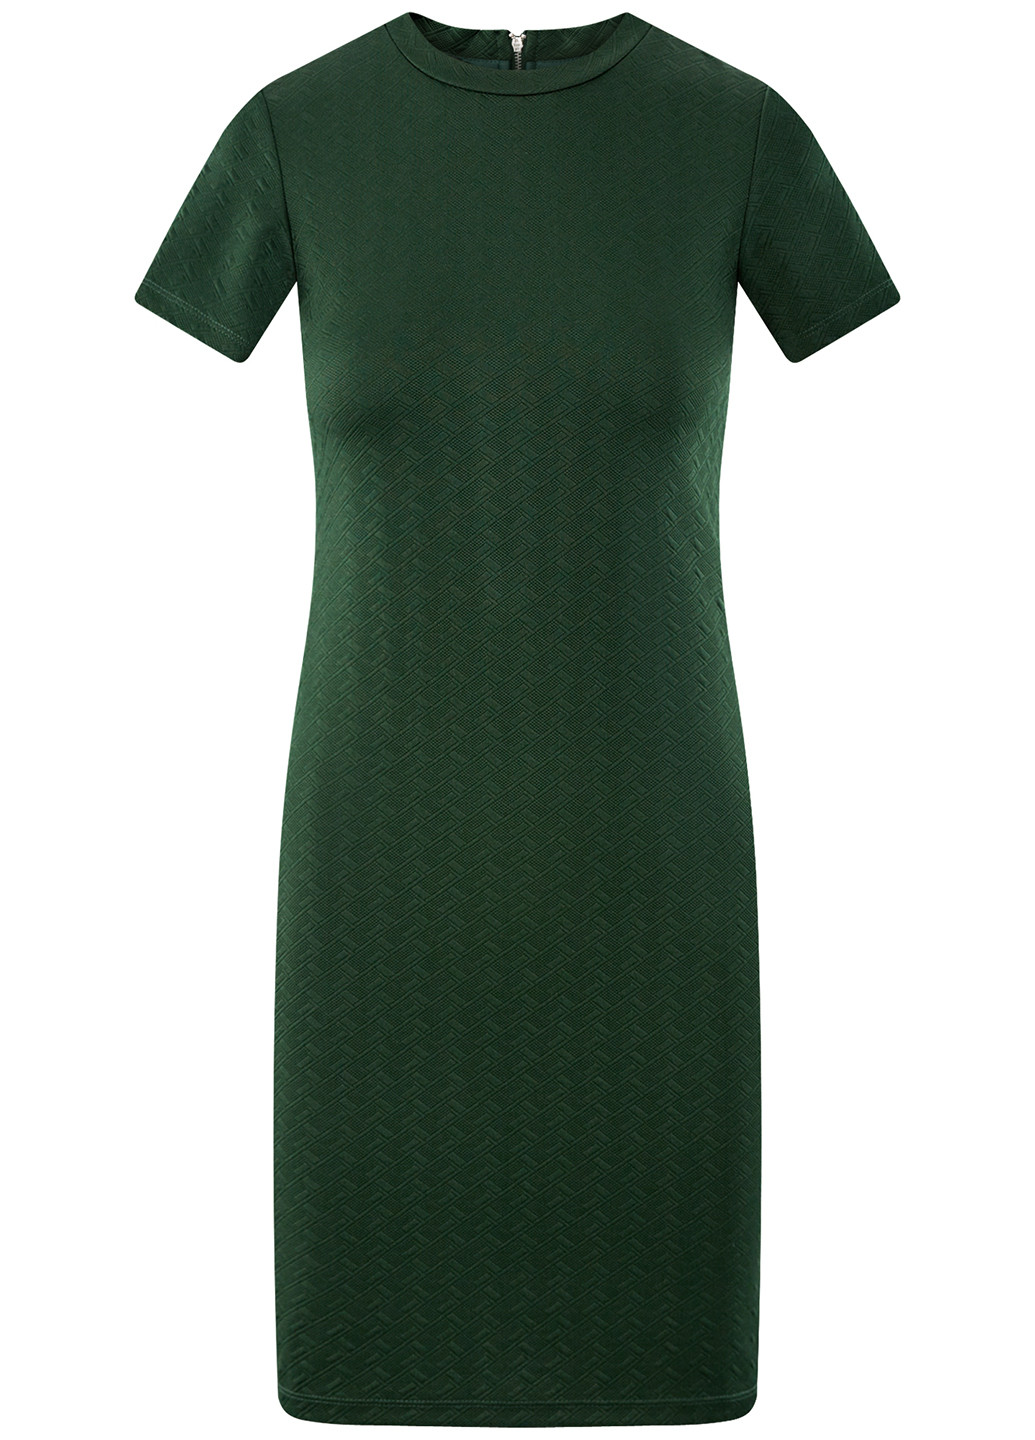 Темно-зеленое деловое платье короткое Oodji фактурное